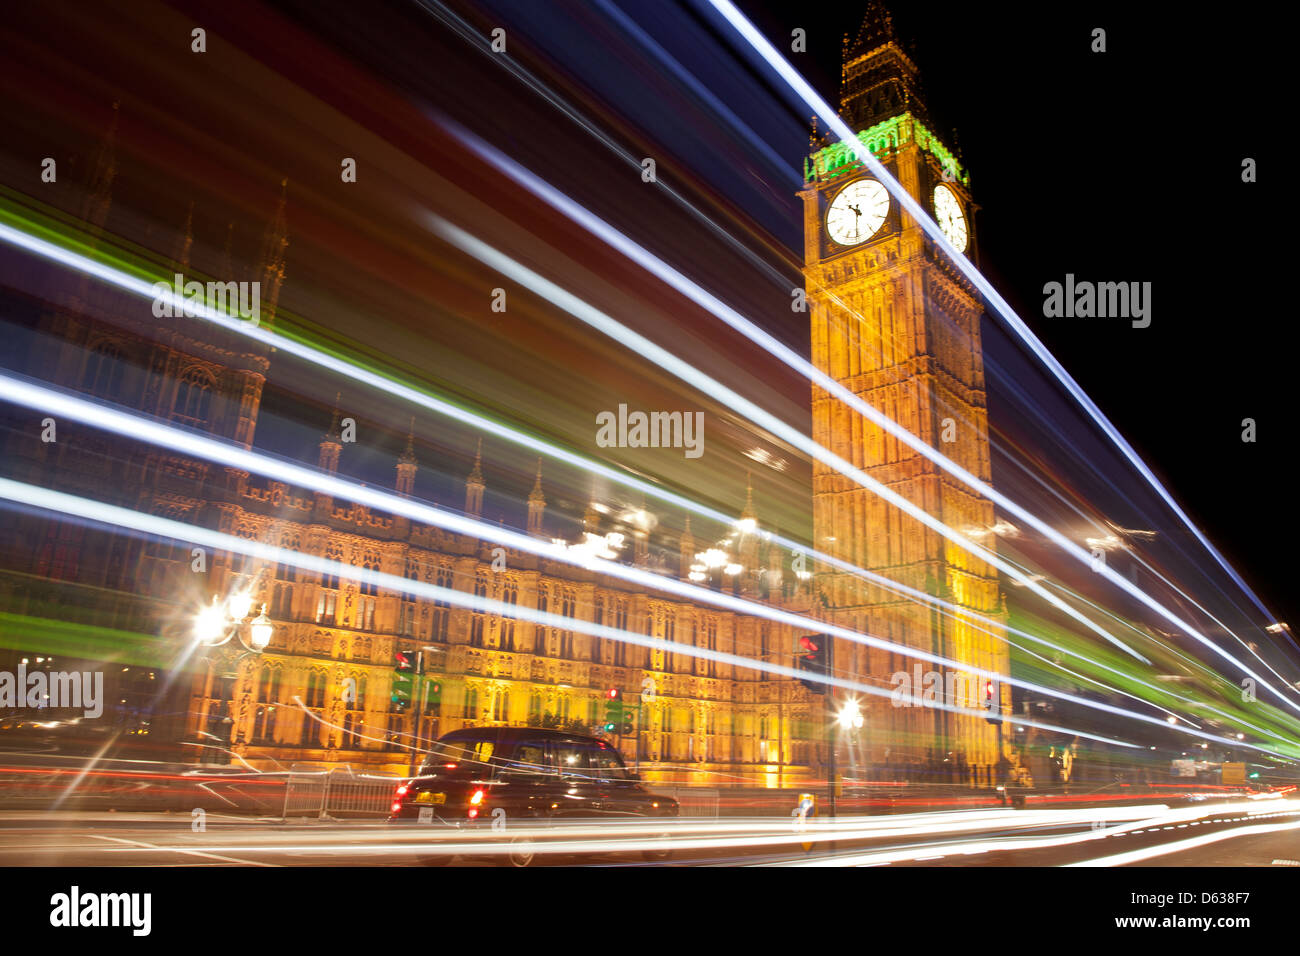 Eine nächtliche Szene zeigt ein Taxi von Big Ben clock, während helle Streifen von einem vorbeifahrenden Bus, durch eine Langzeitbelichtung Wirkung getan werden Stockfoto